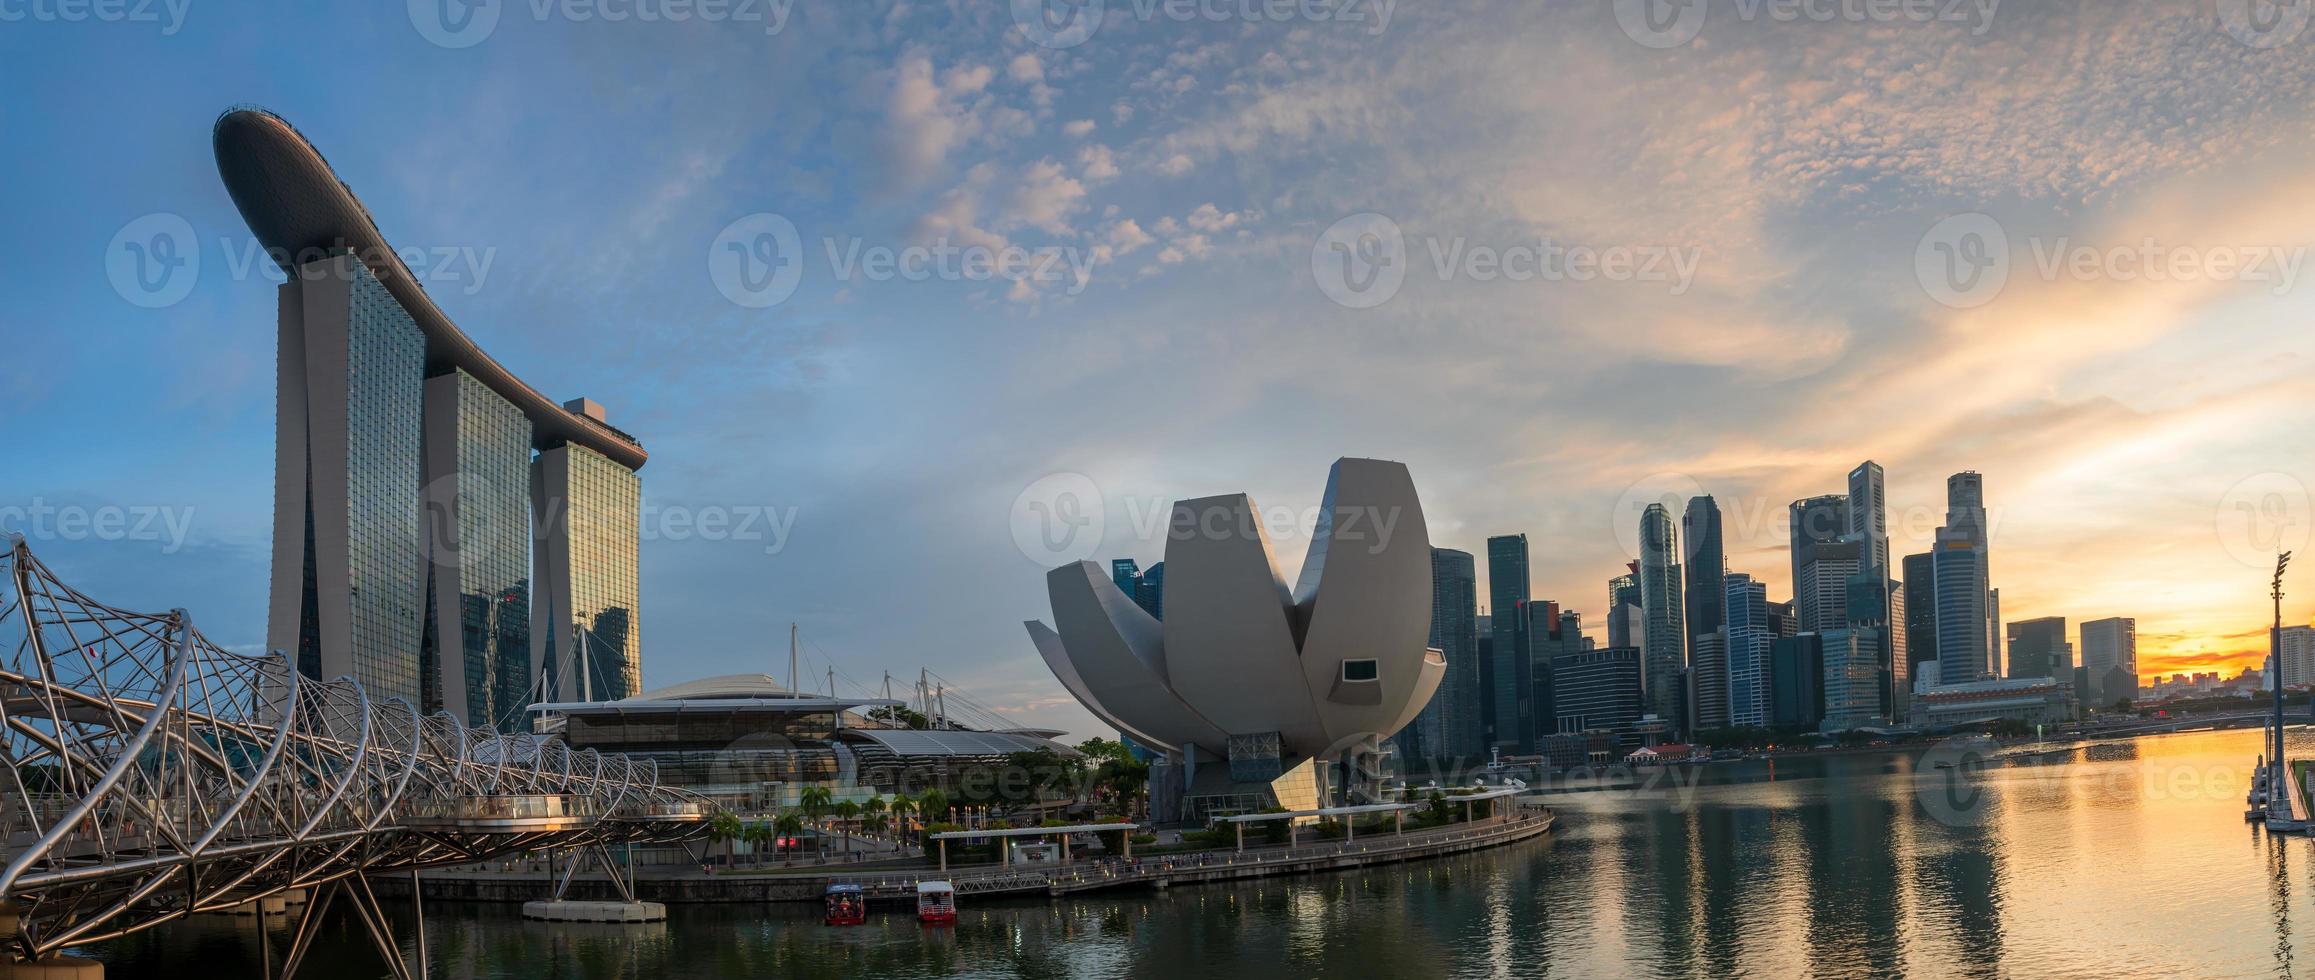 landschap visie van Singapore bedrijf wijk en stad Bij schemering. Singapore stadsgezicht Bij schemer gebouw in de omgeving van jachthaven baai. foto